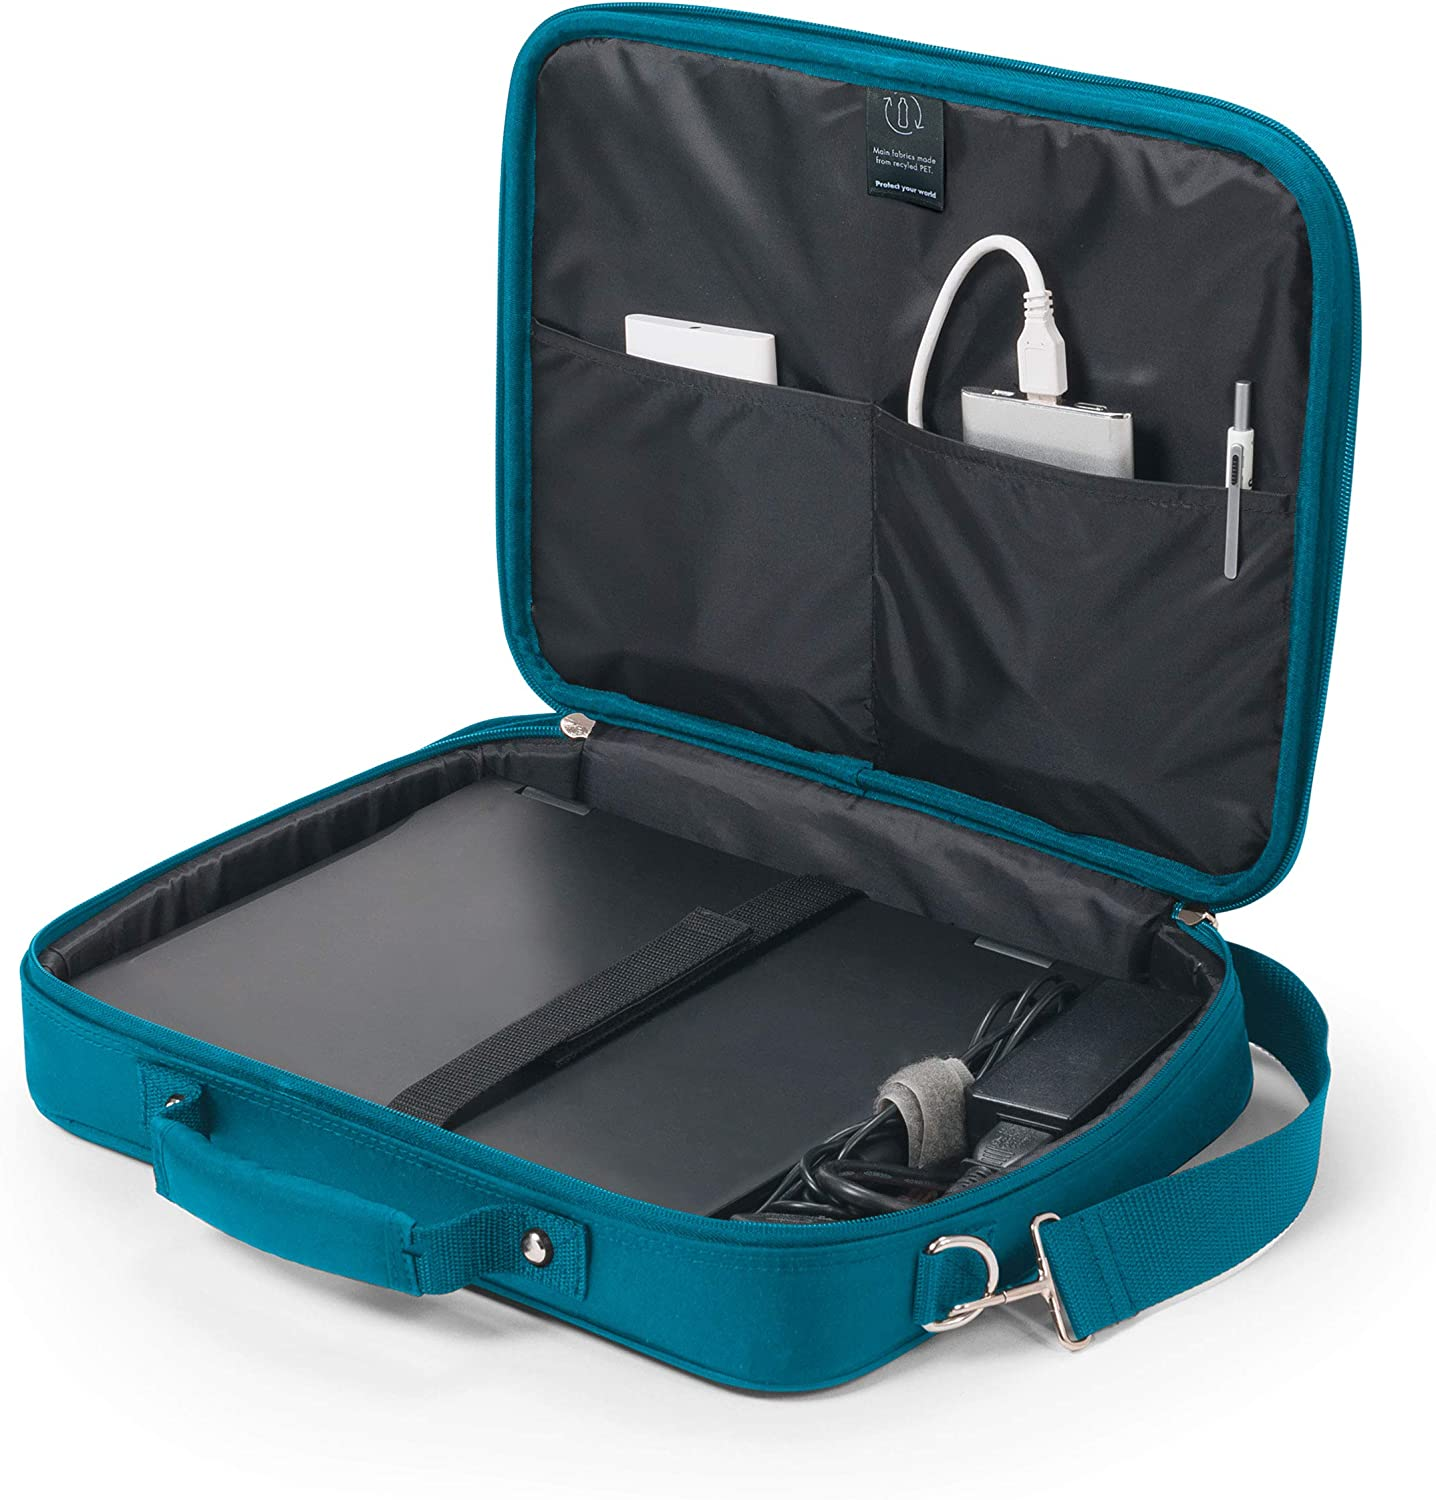 DICOTA Eco Multi Aktentasche Universal Blau PET, für recycled Notebooktasche BASE